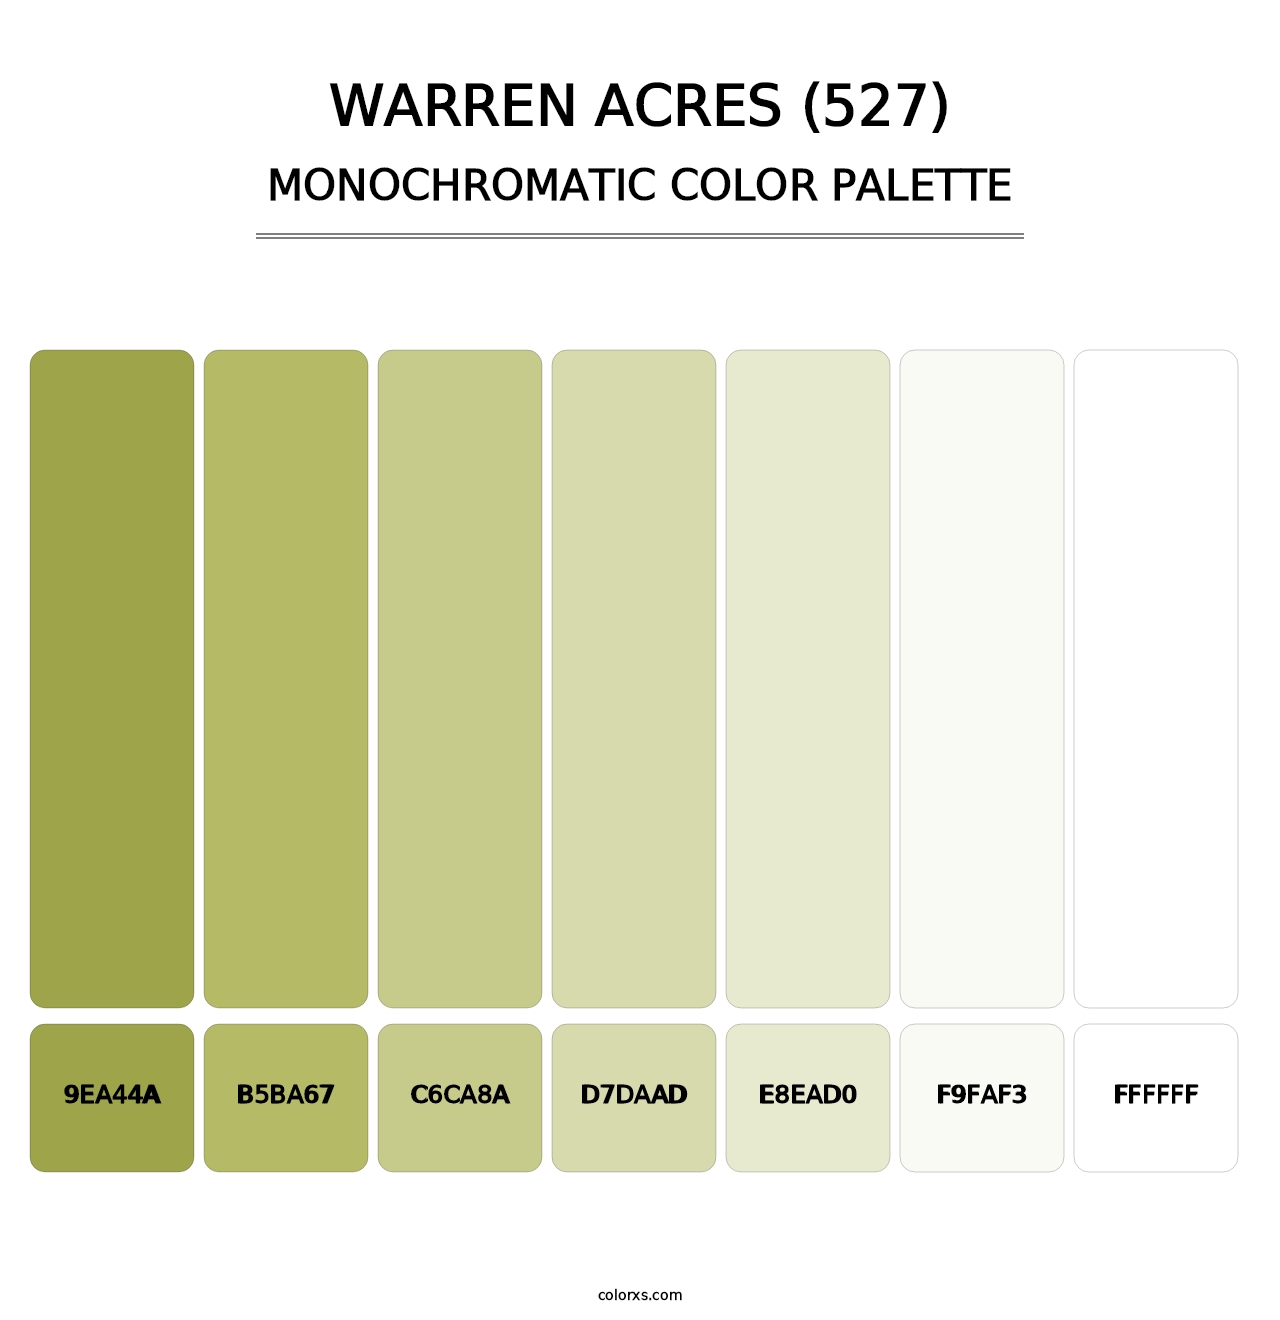 Warren Acres (527) - Monochromatic Color Palette